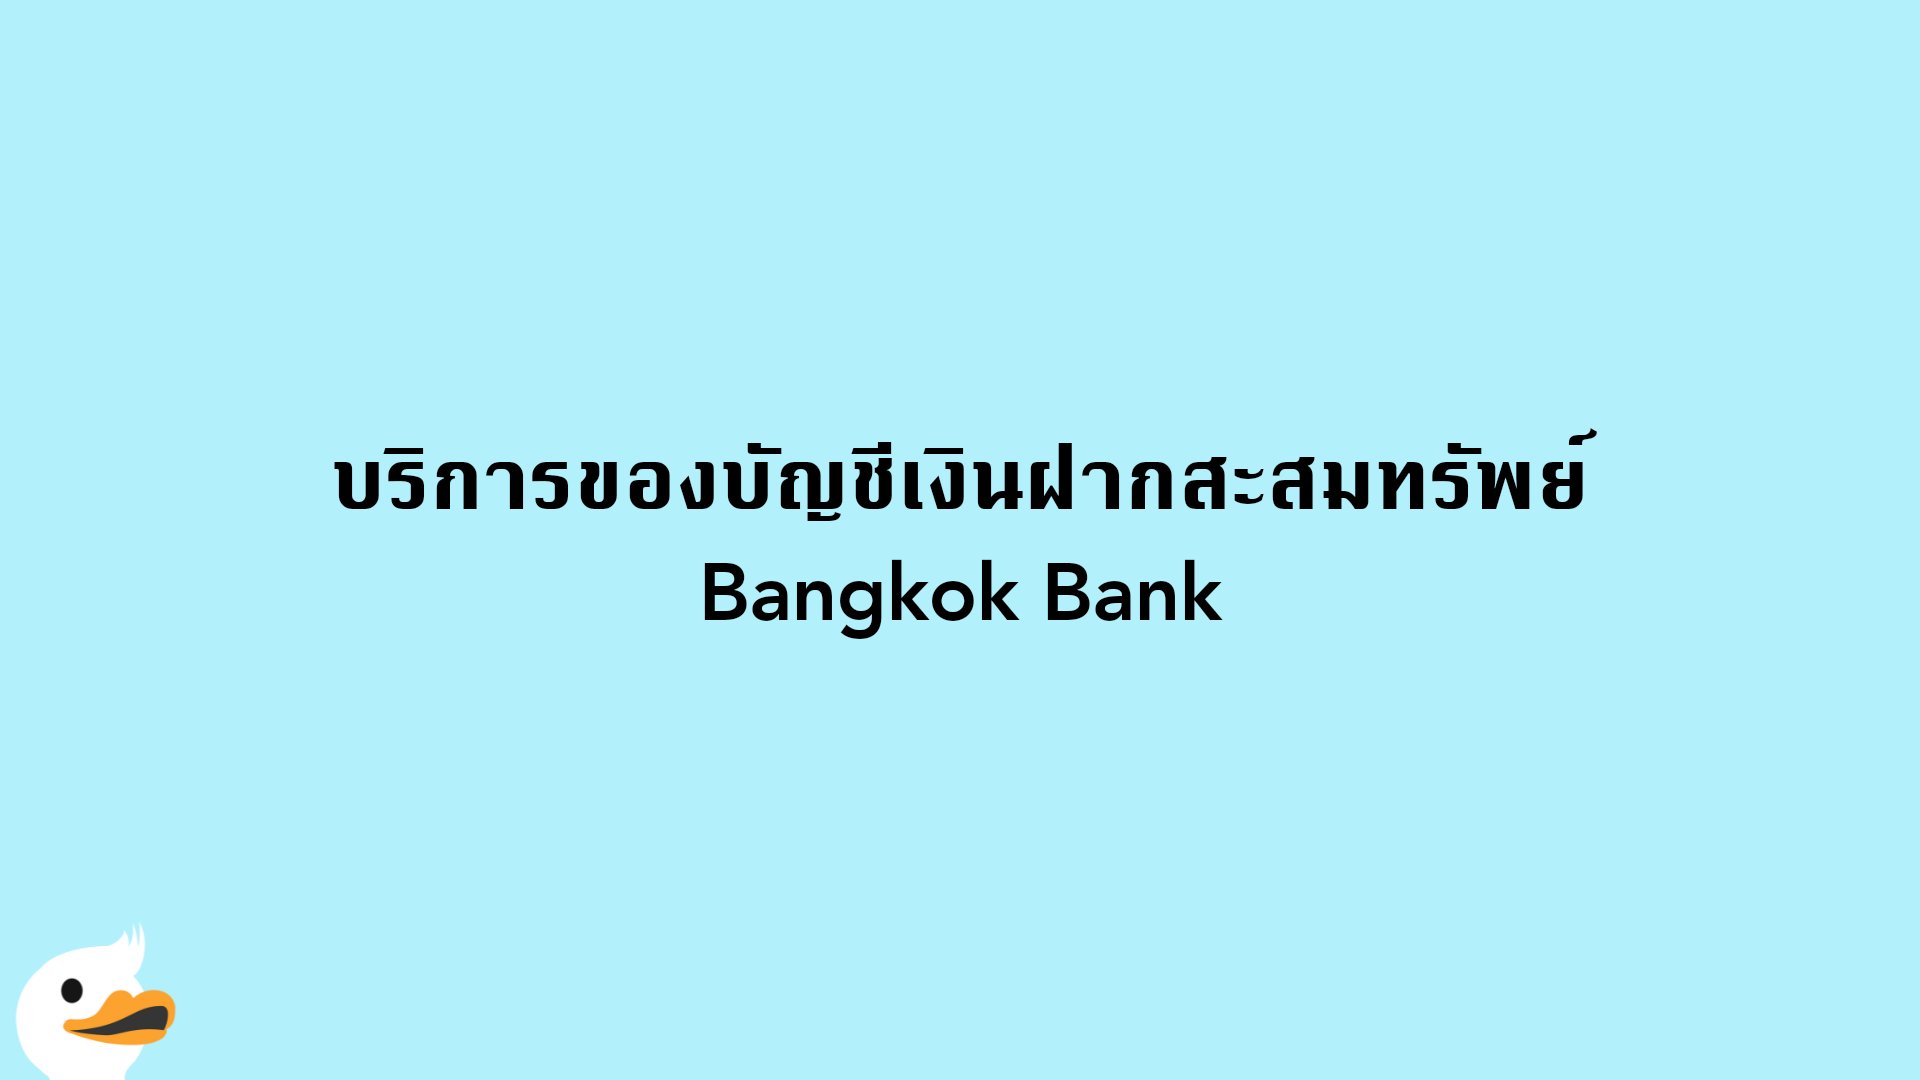 บริการของบัญชีเงินฝากสะสมทรัพย์ Bangkok Bank